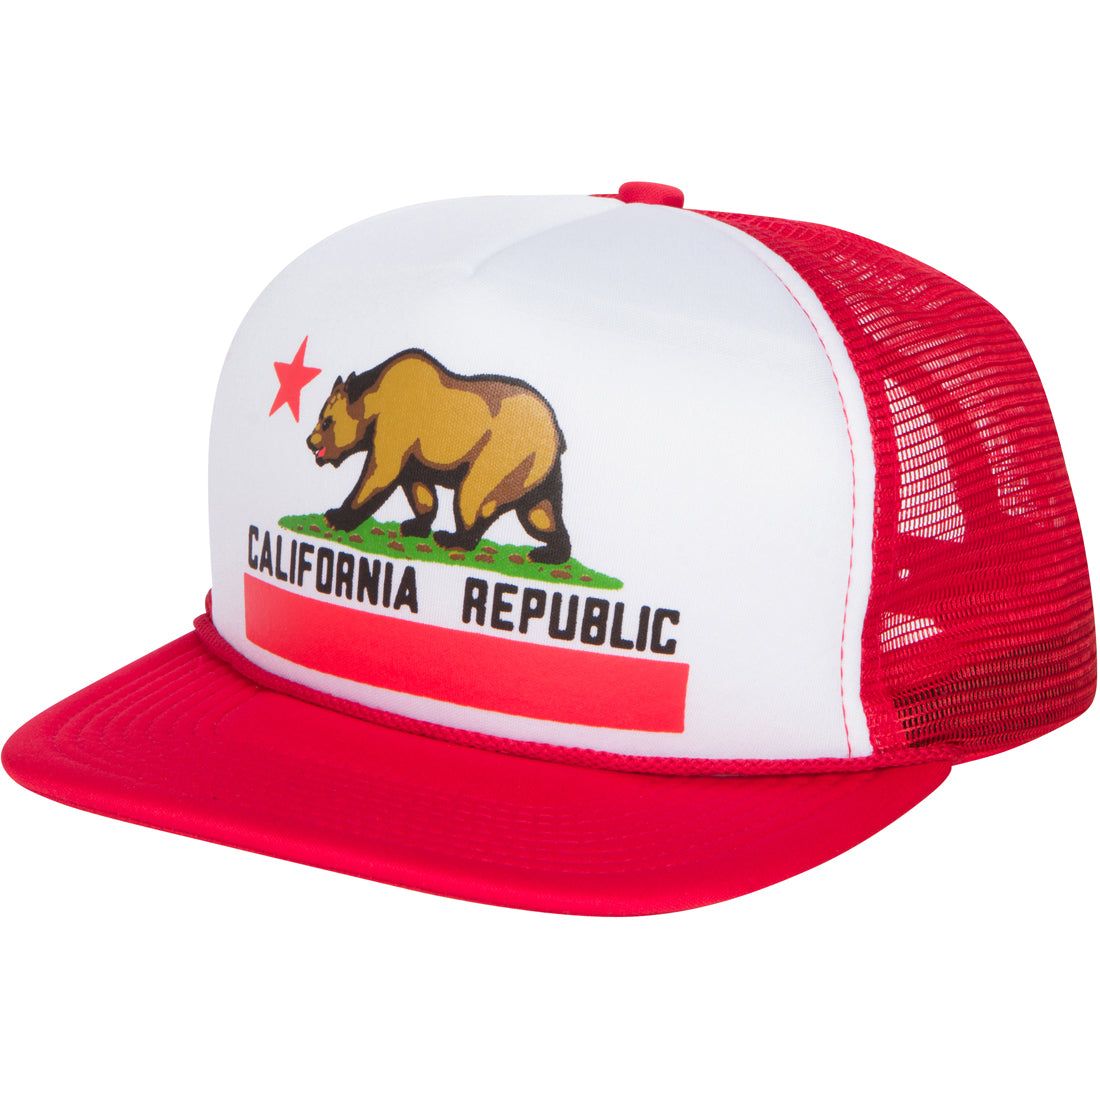 California Republic Flag Flat Bill Snapback Mesh Truckers Cap